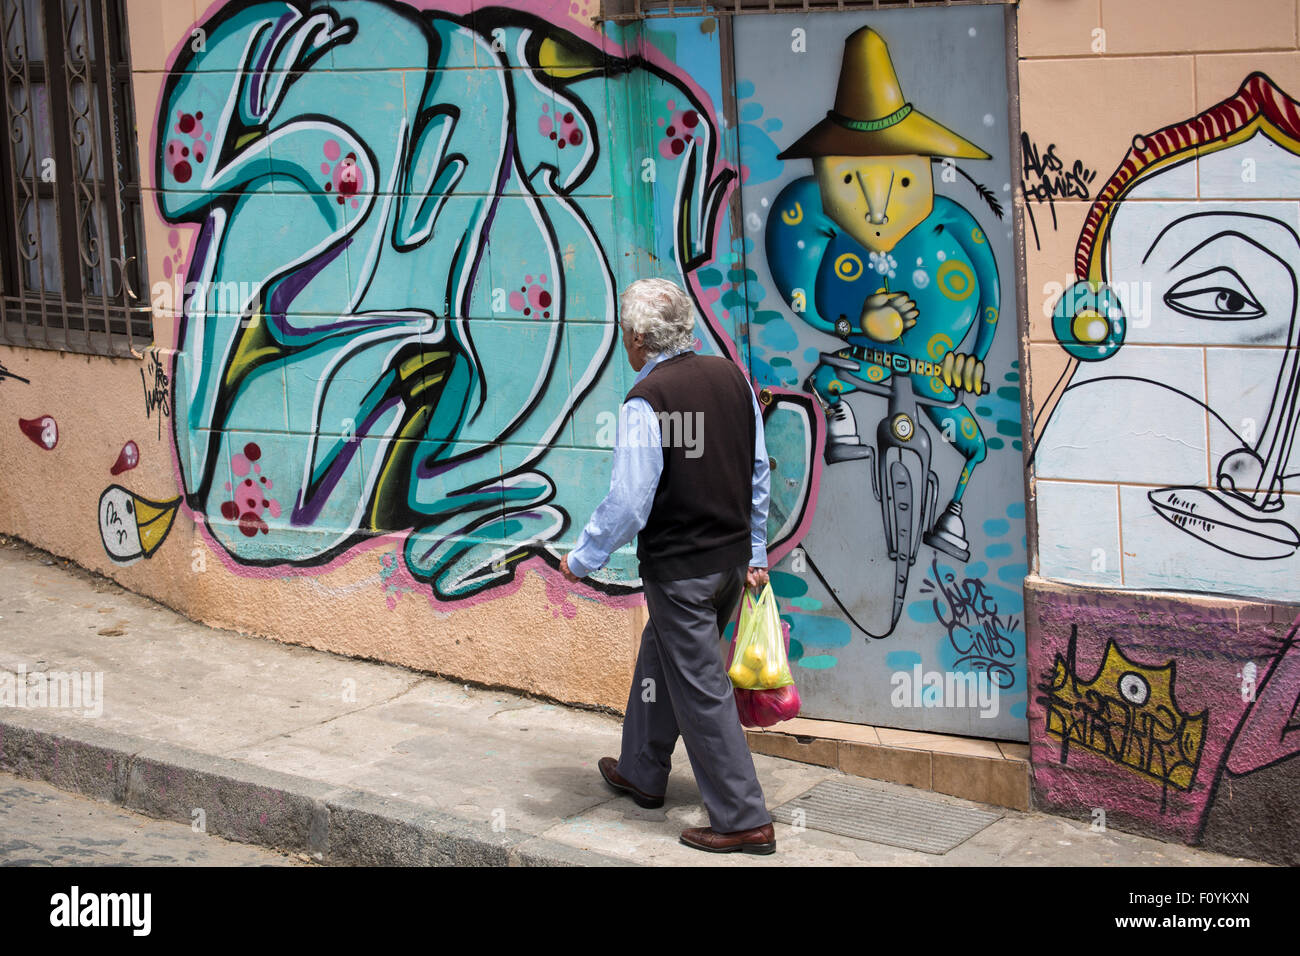 Street art in Valparaiso, Chile Stock Photo